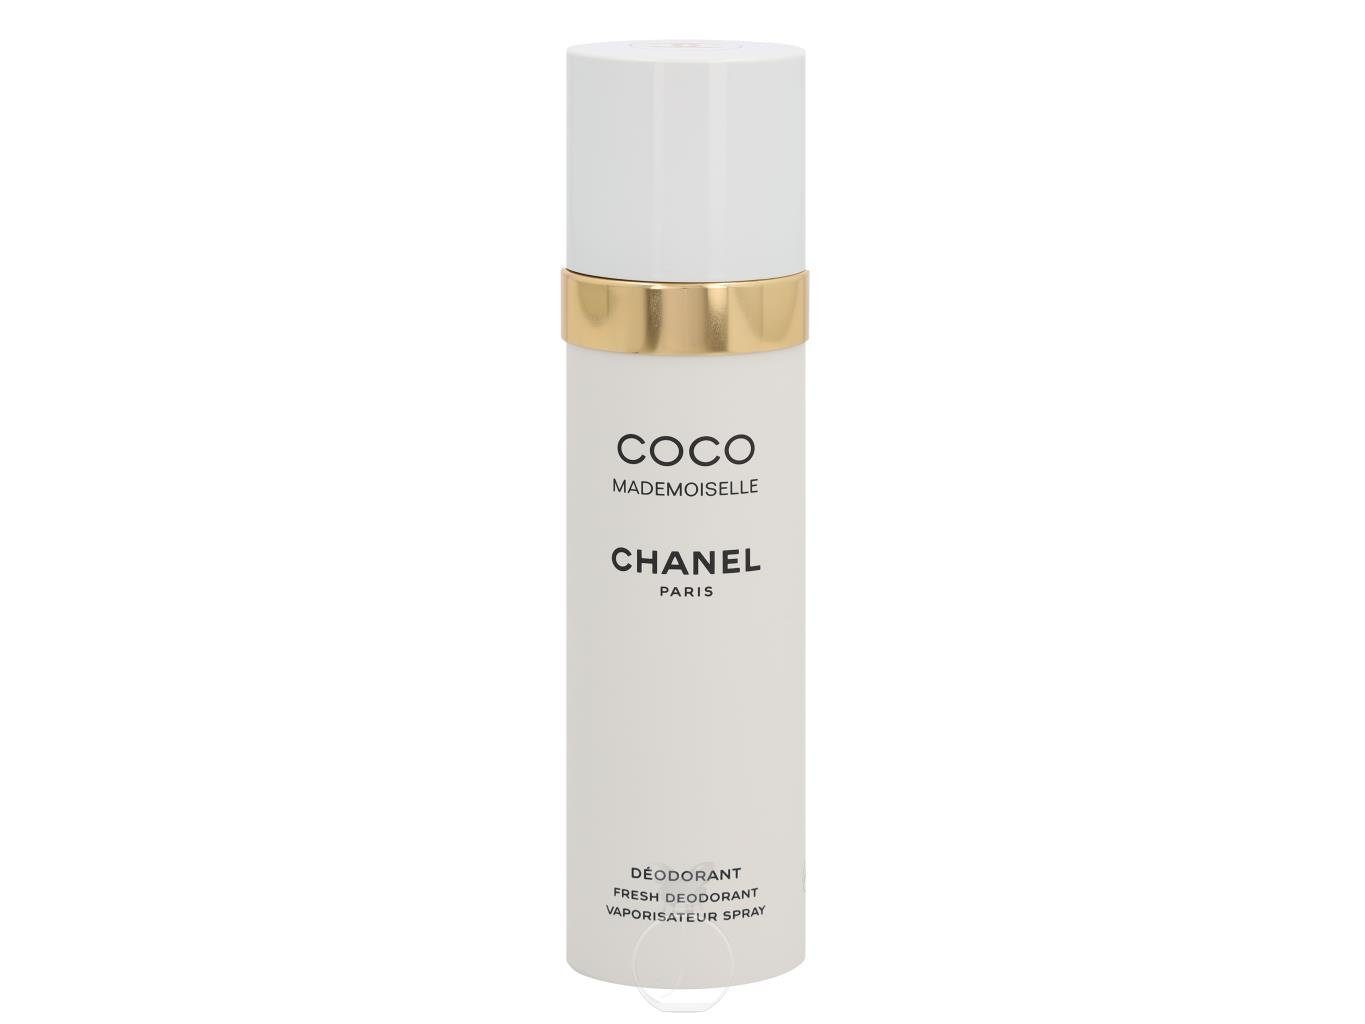 Körperpflegeduft Mademoiselle Deodorant Chanel 100 ml CHANEL Coco